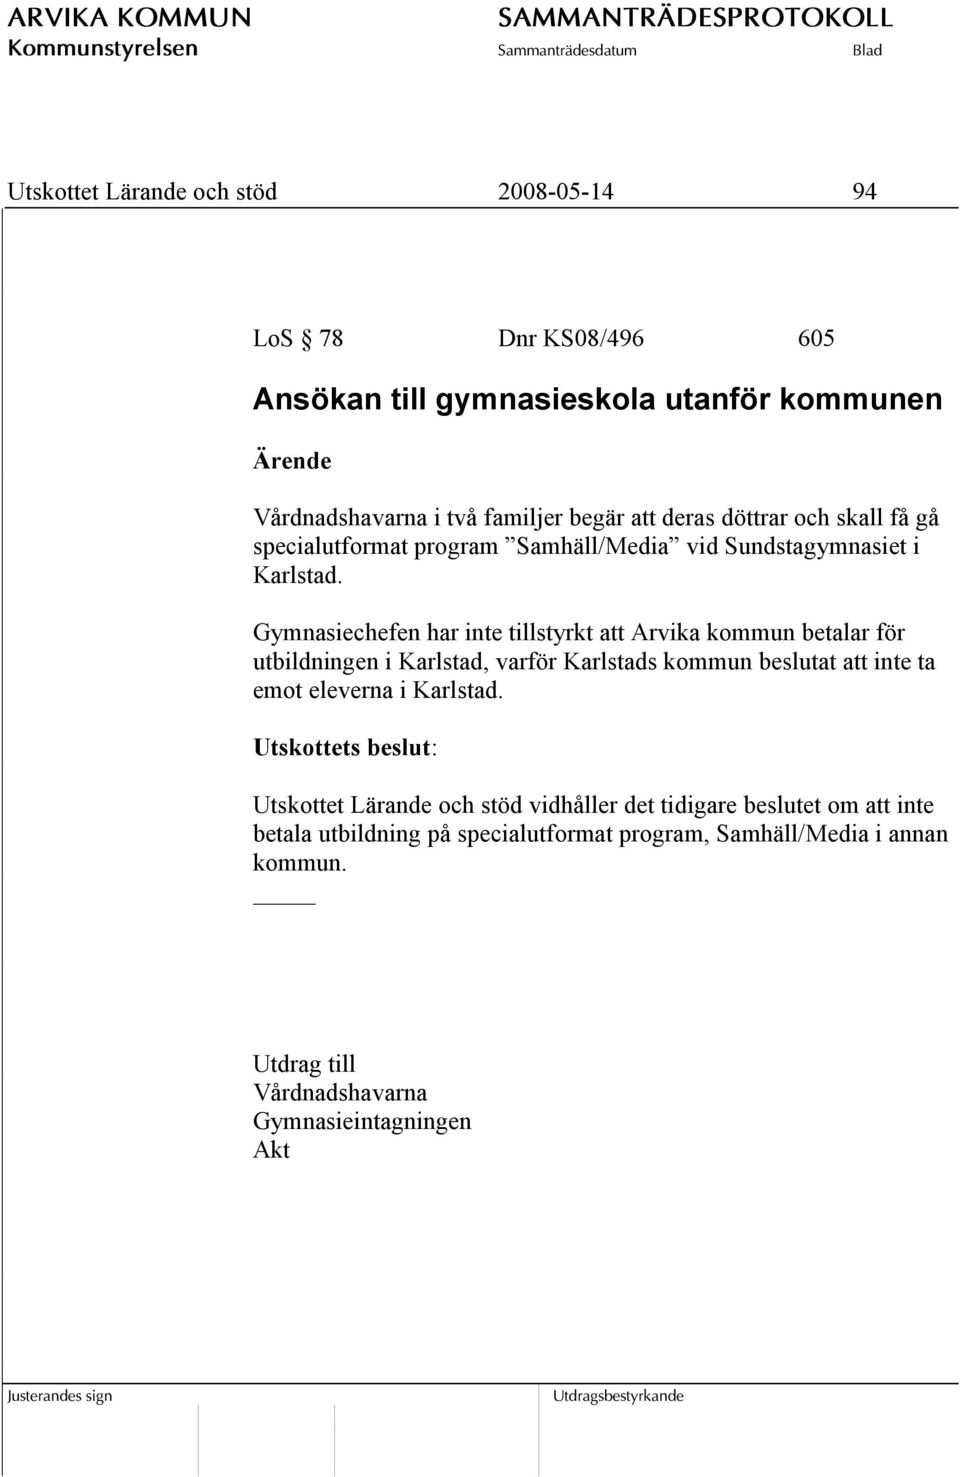 Gymnasiechefen har inte tillstyrkt att Arvika kommun betalar för utbildningen i Karlstad, varför Karlstads kommun beslutat att inte ta emot eleverna i